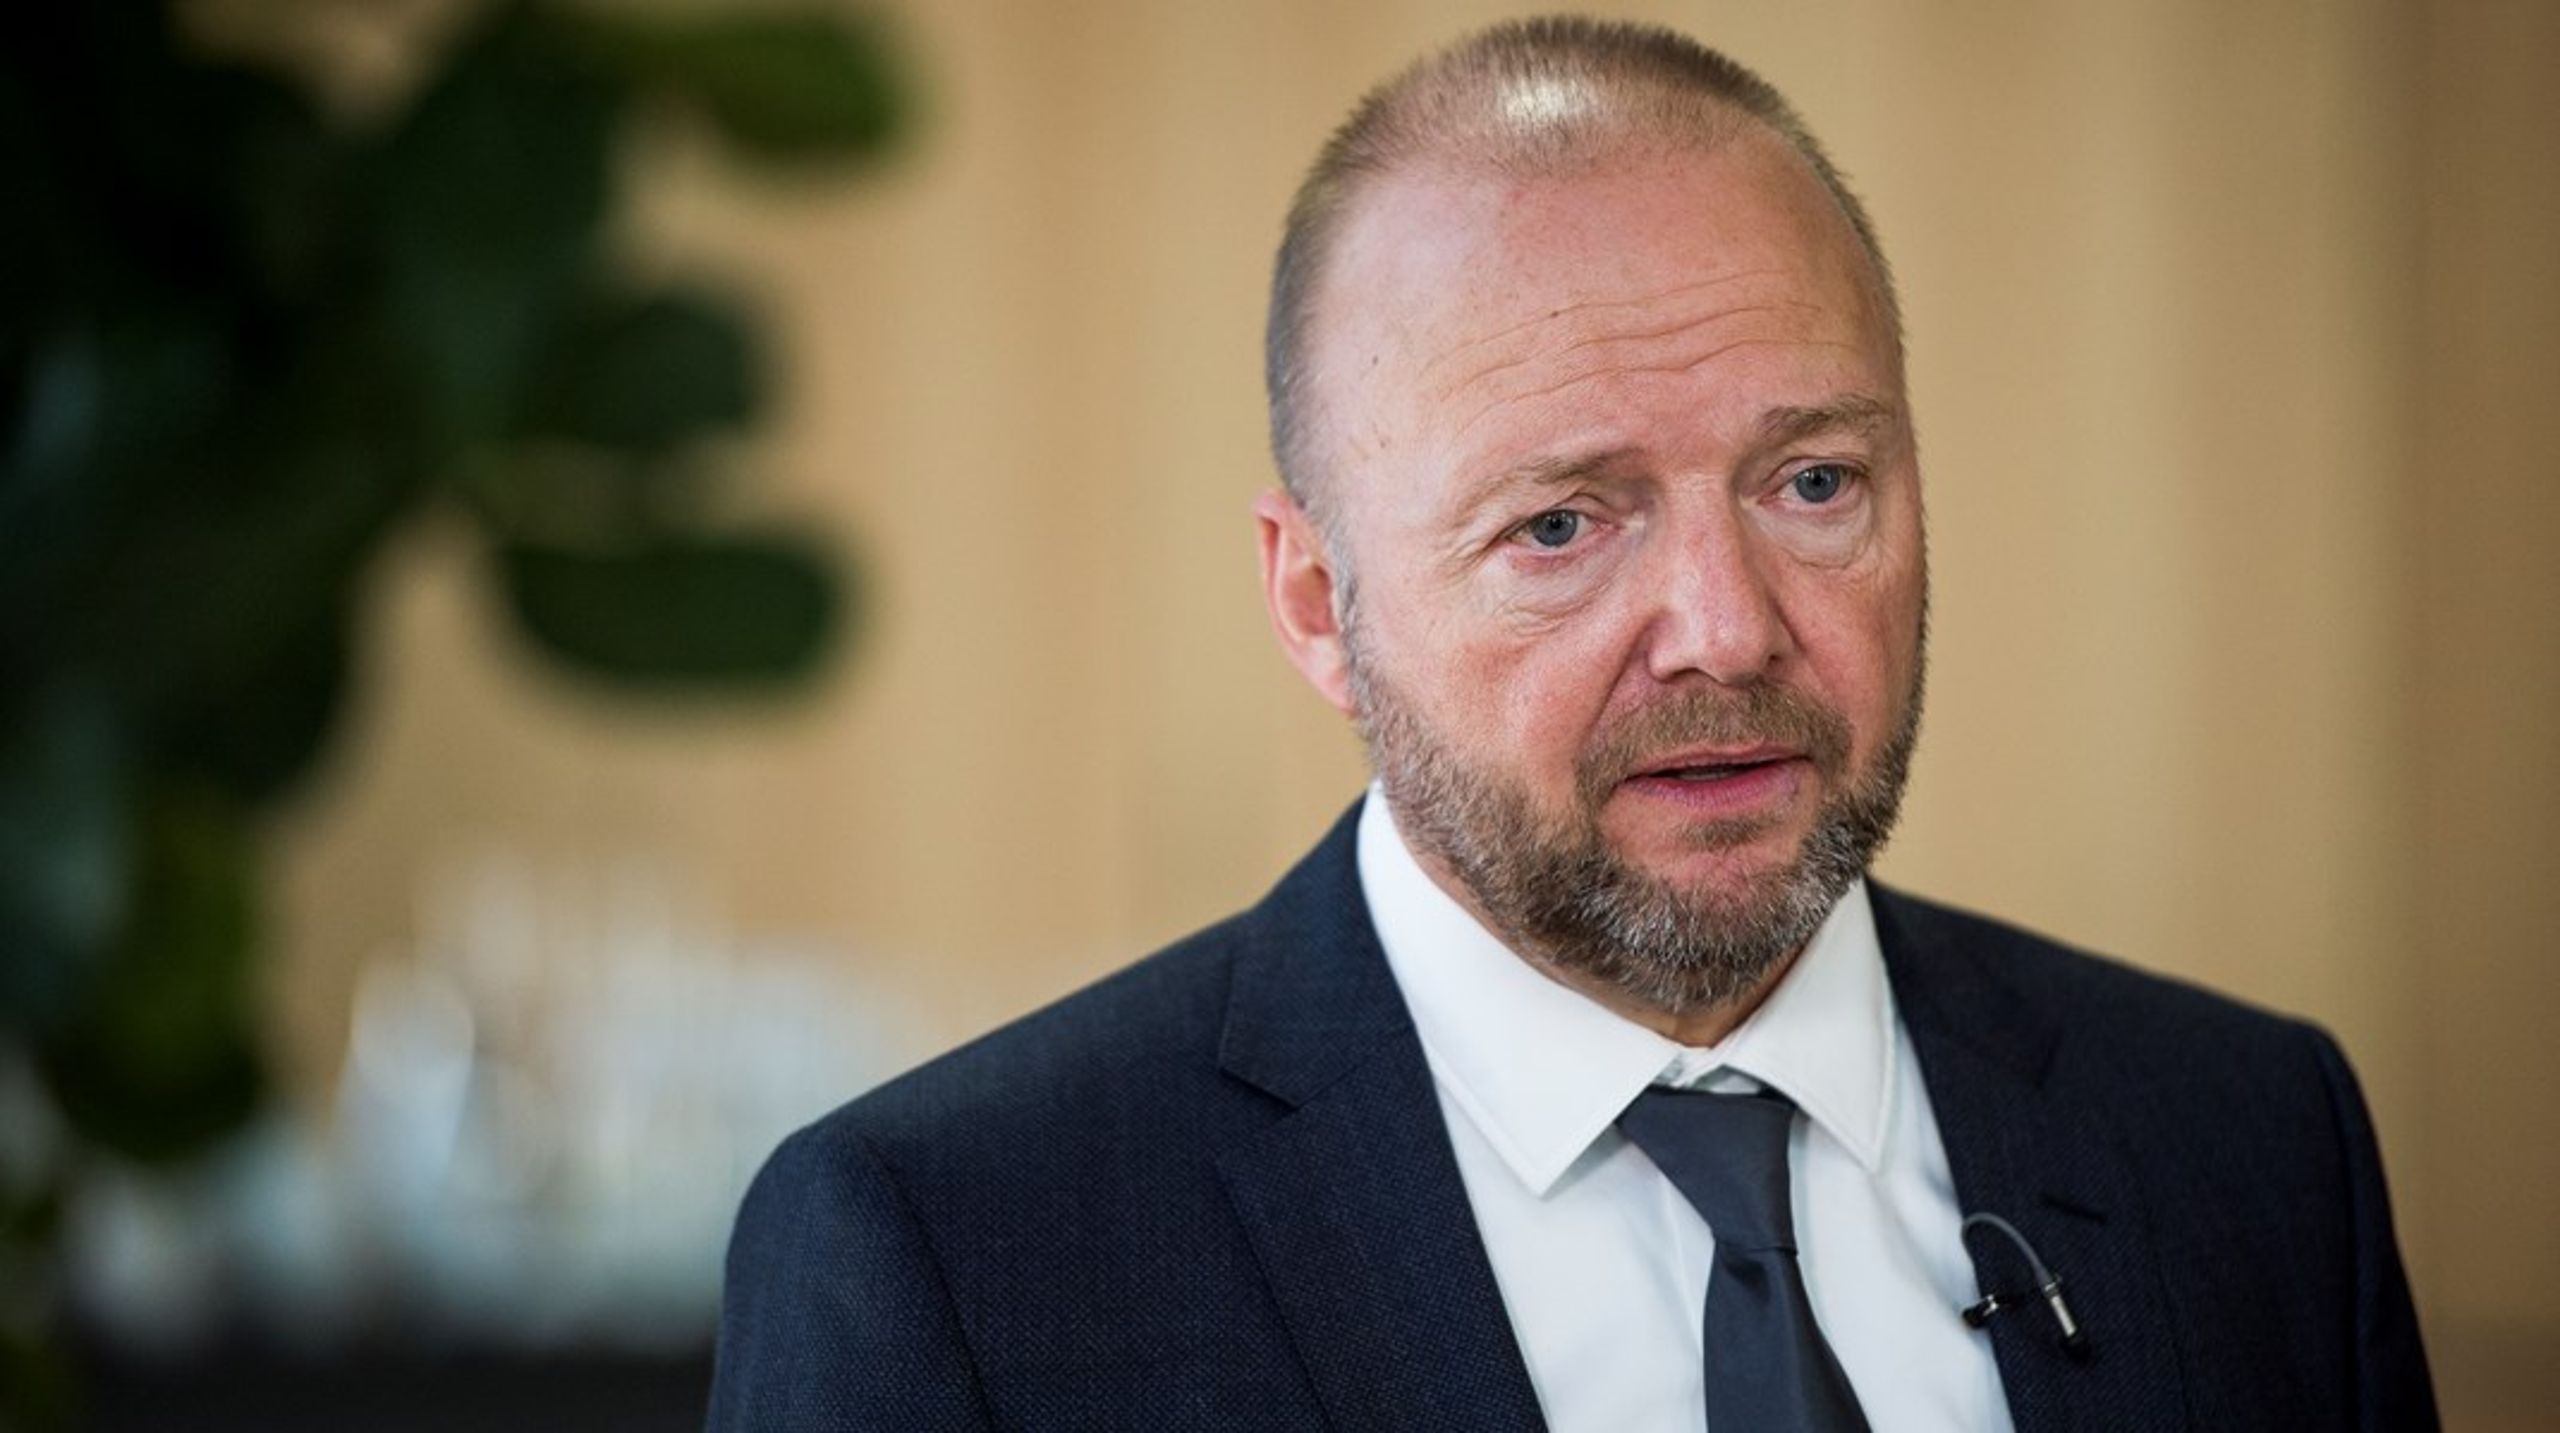 " Med klimaforandringerne som det internationale samfunds største udfordring ser jeg
frem til at blive en del af et unikt partnerskab, hvor Danmark kan gøre en reel
forskel," siger den nytiltrådte bestyrelsesformand for State of Green.